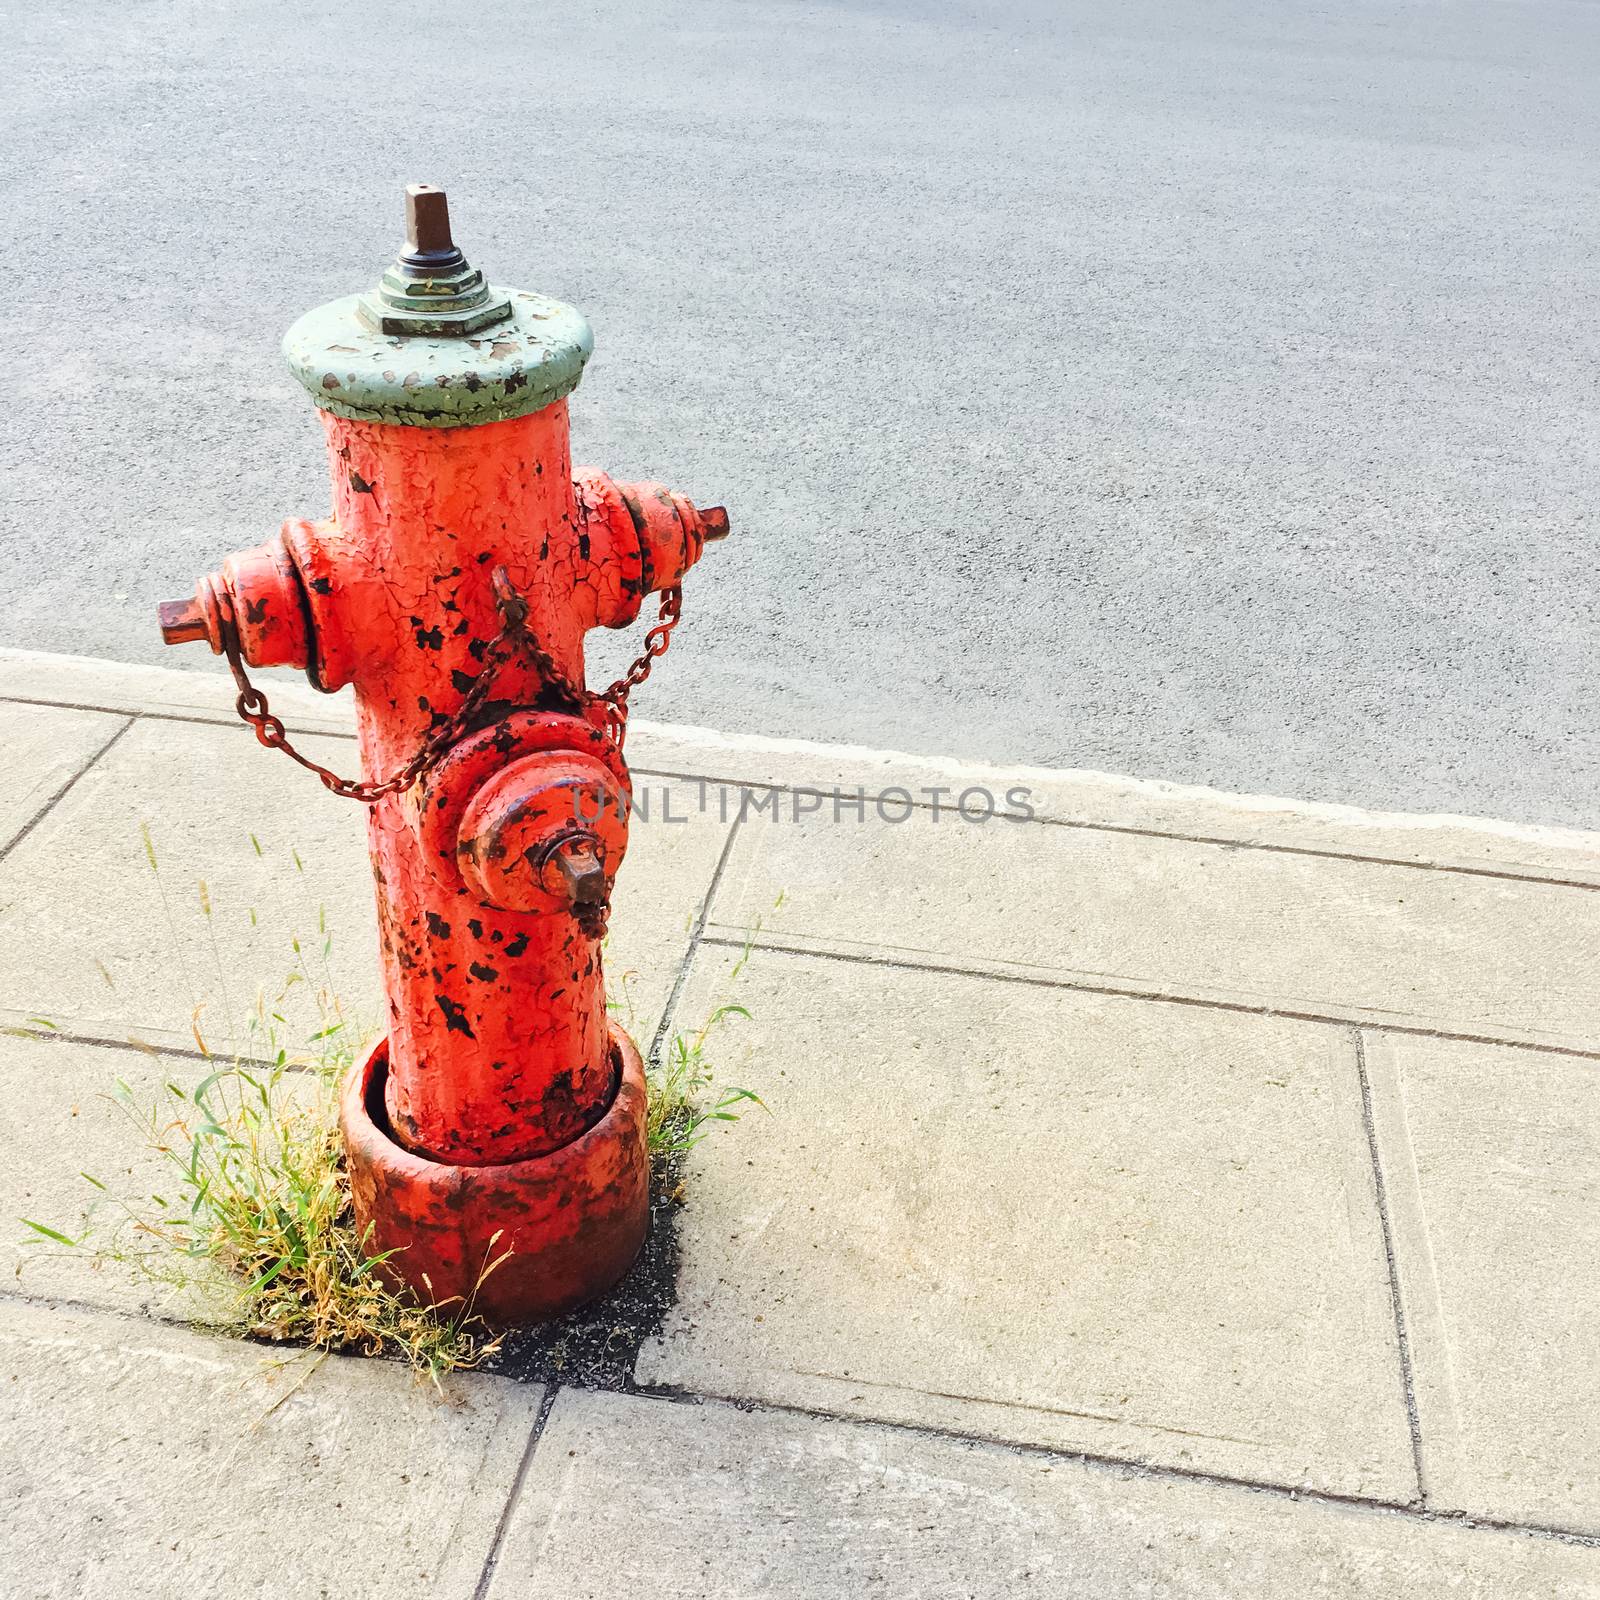 Red fire hydrant on a sidewalk of an urban street.